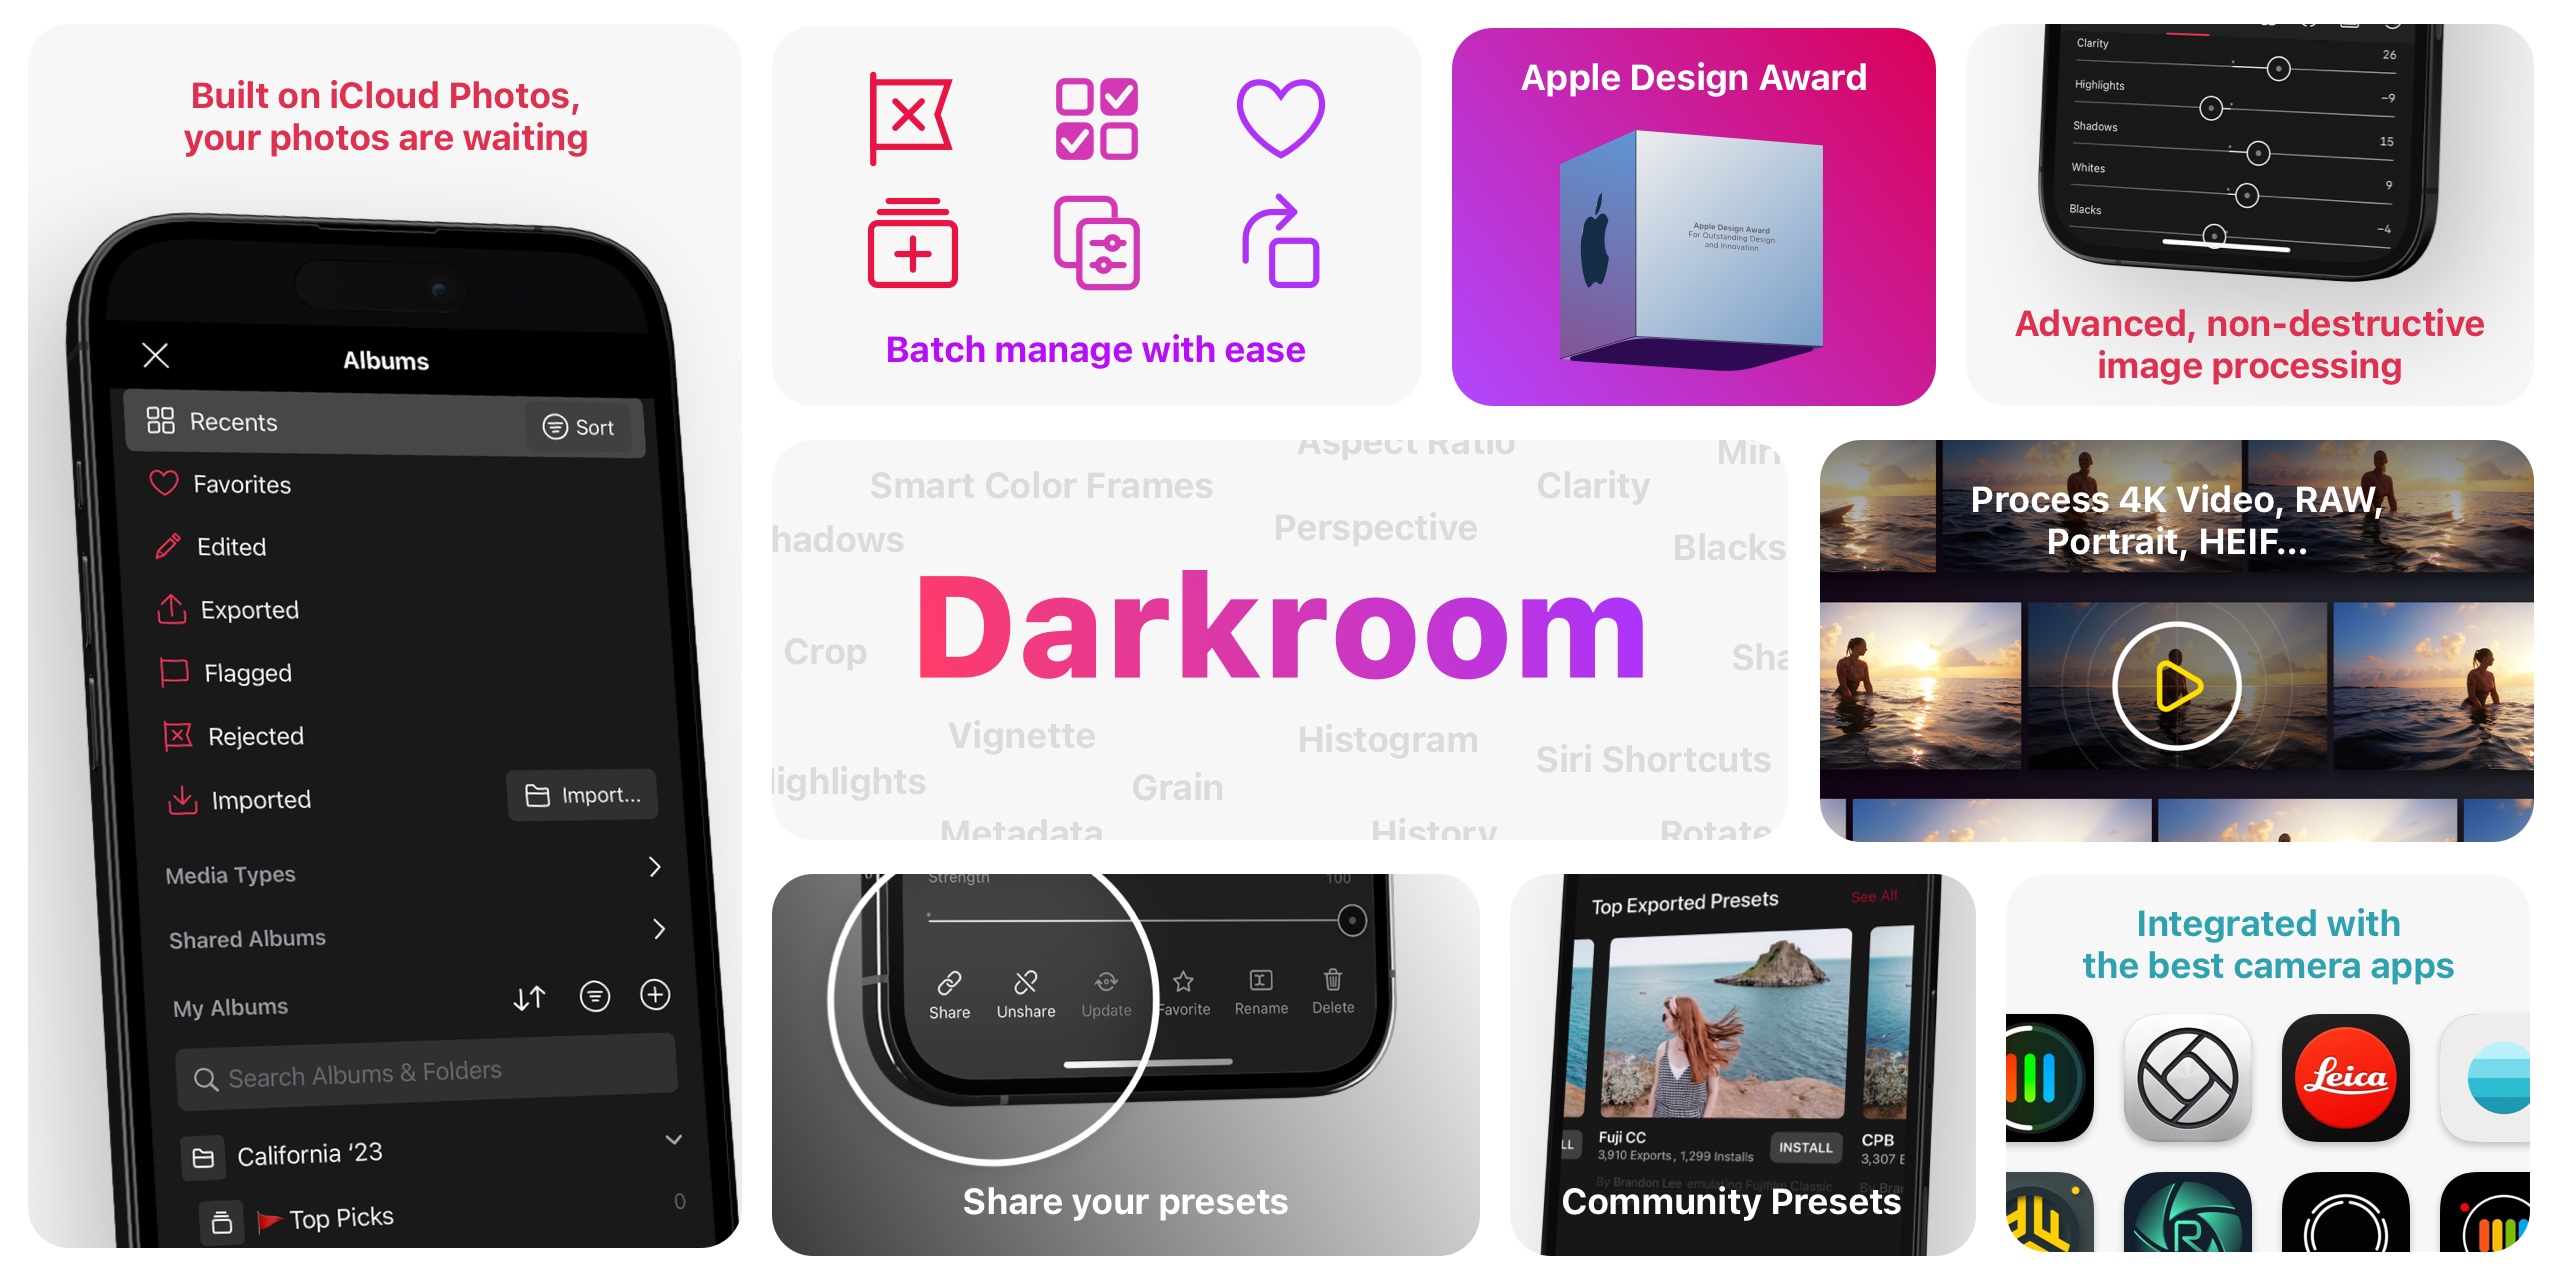 Darkroom Features